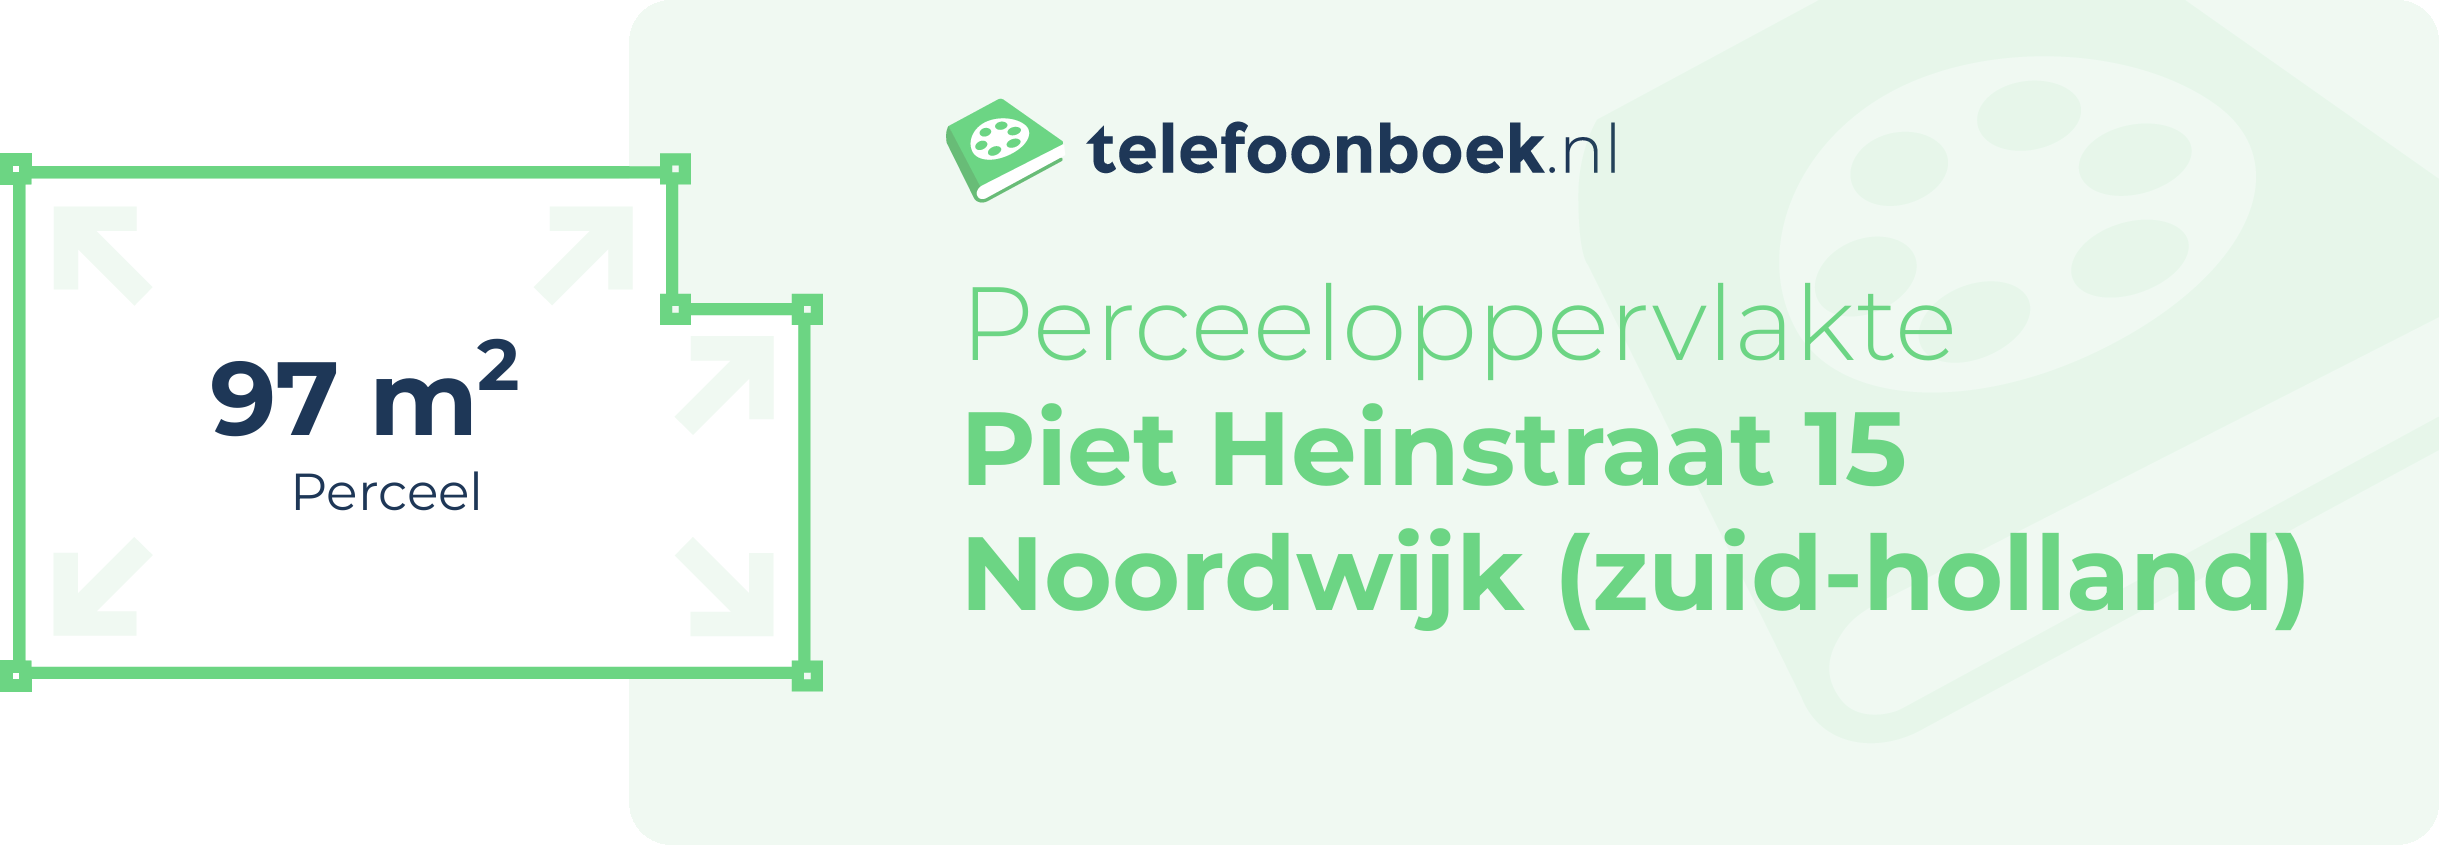 Perceeloppervlakte Piet Heinstraat 15 Noordwijk (Zuid-Holland)